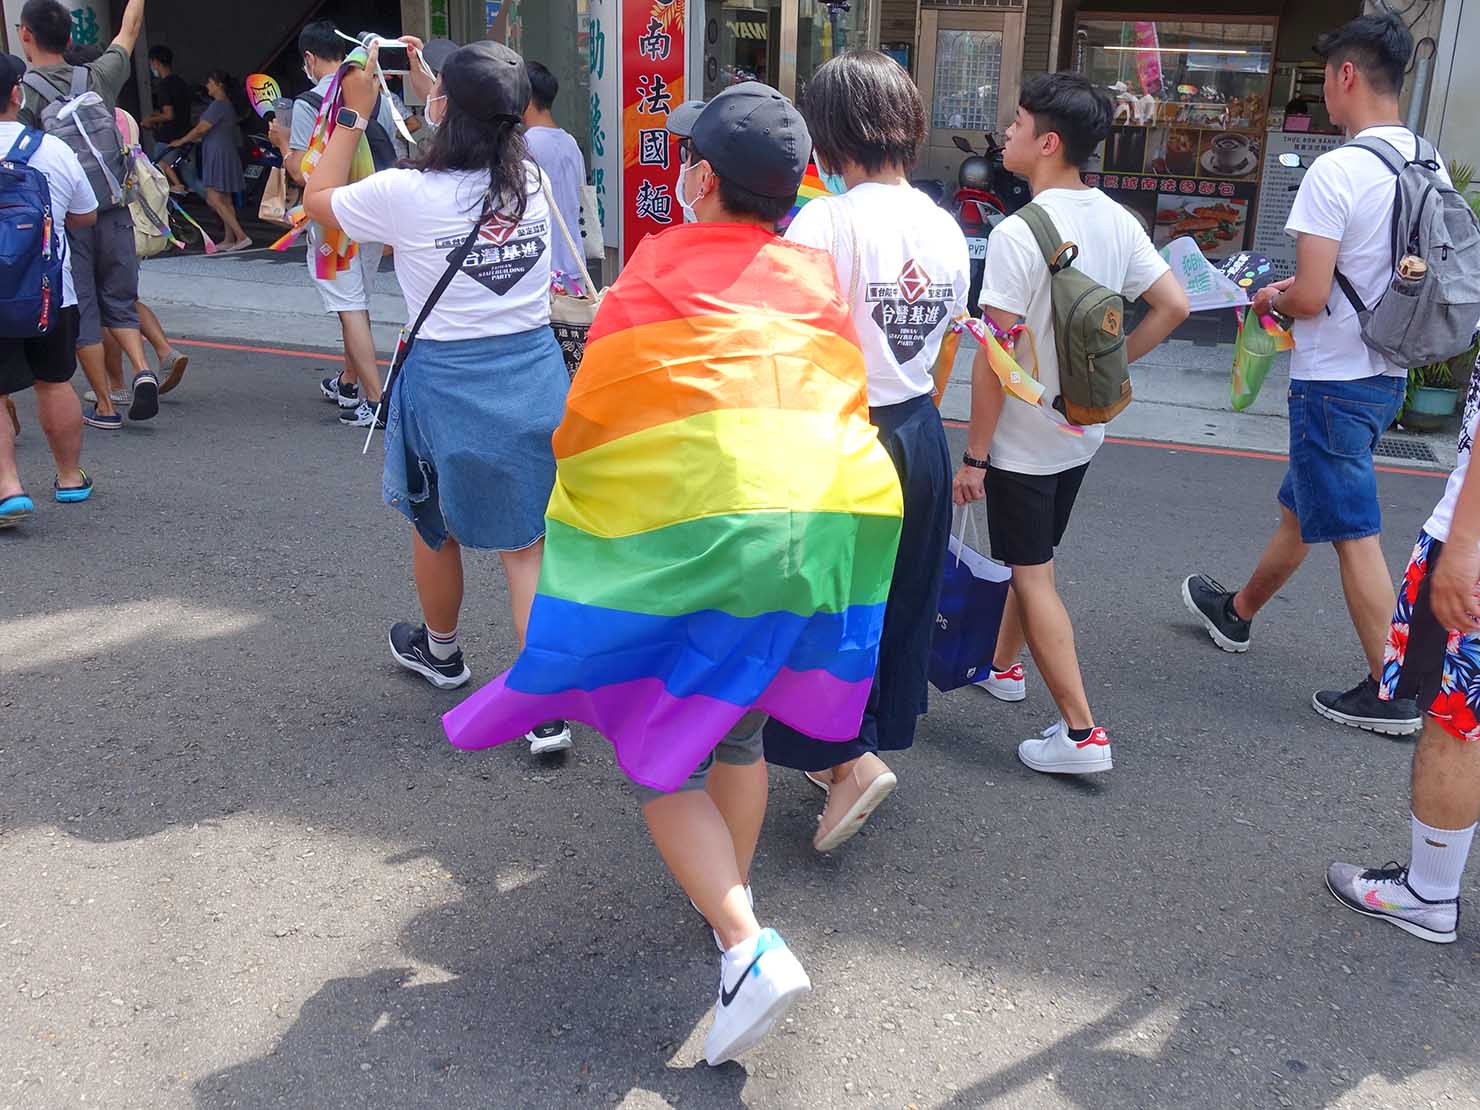 台湾・桃園のLGBTプライド「桃園彩虹野餐日」2020のパレードでレインボーフラッグをまとって歩く参加者